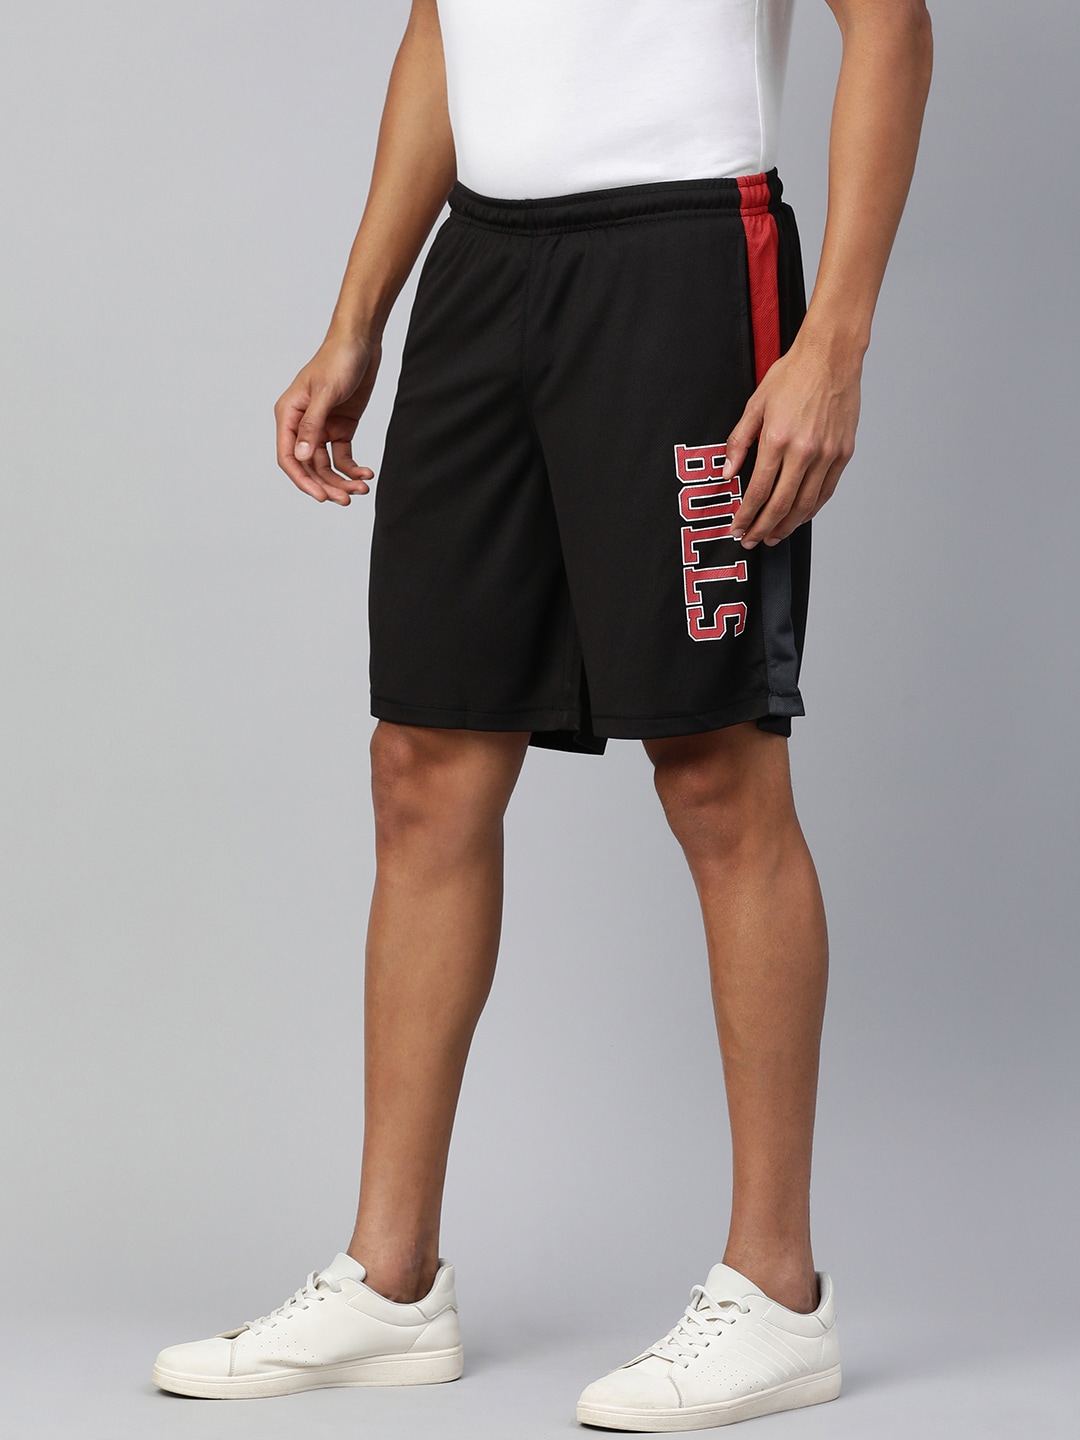 Buy NBA NBA Men Chicago Bulls Printed Sports Shorts at Redfynd